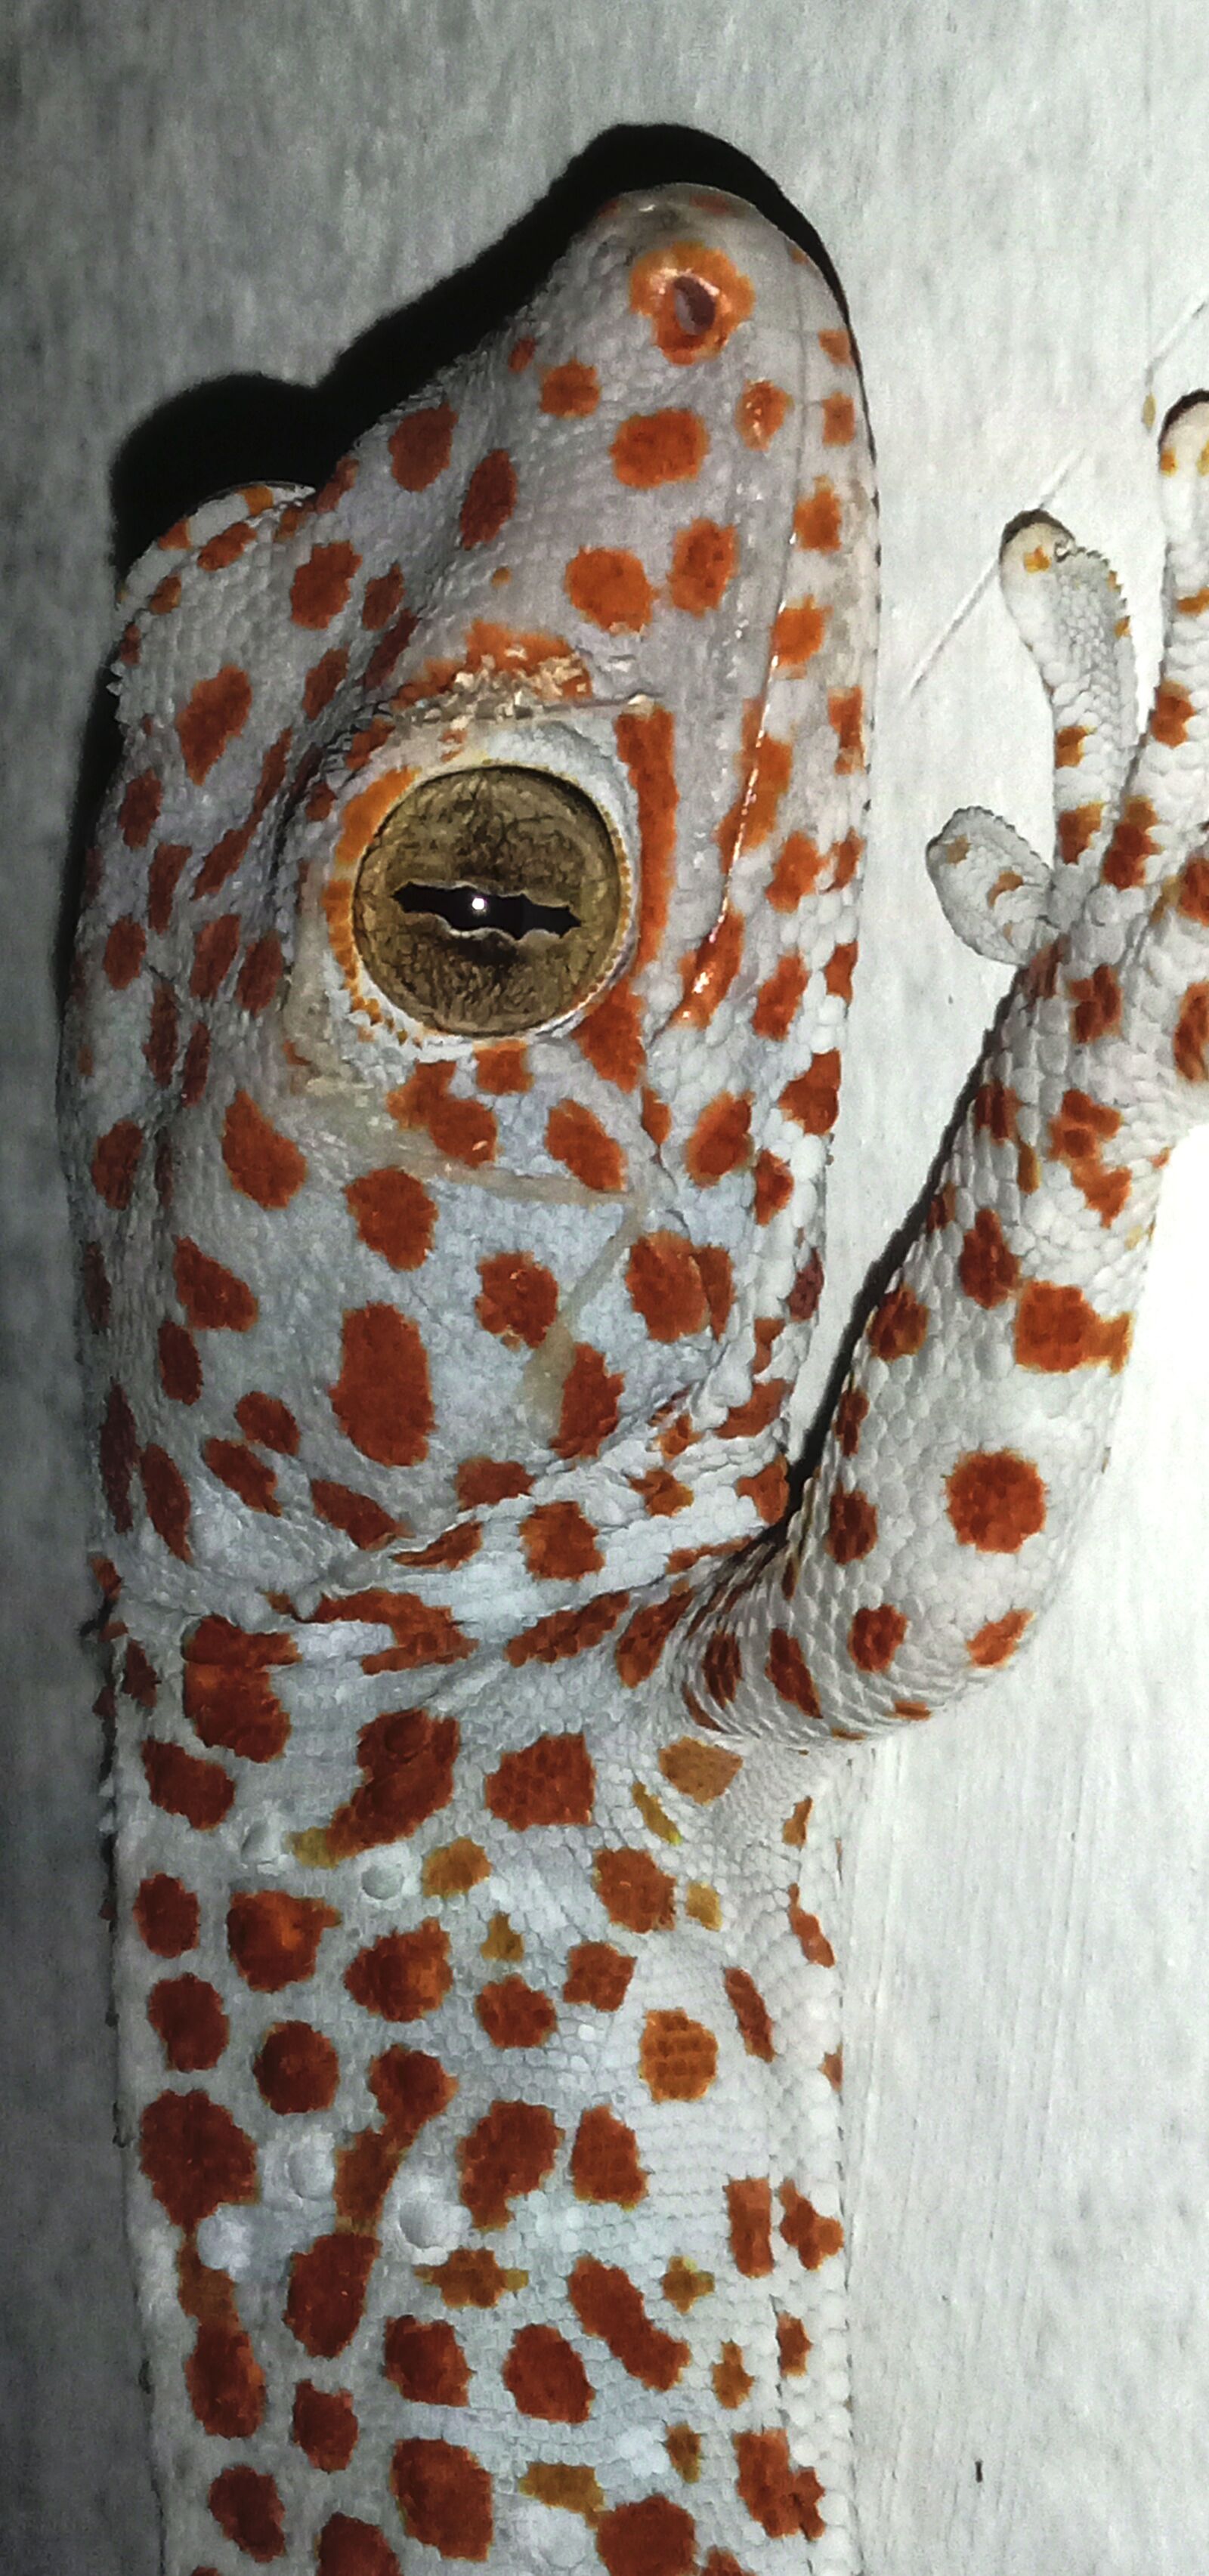 vivo 1904 sample photo. Gecko, lizard, reptile photography